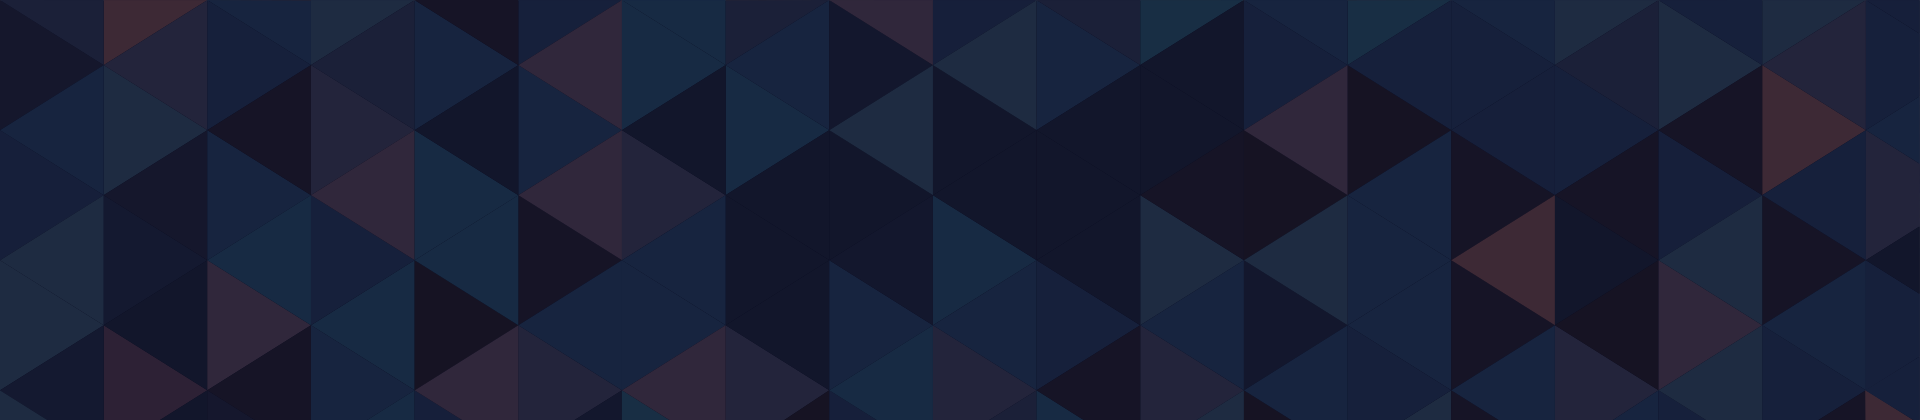 Mosaïque de triangles isocèles, colorés en différentes teintes de bleu marine, qui veulent évoquer la variété des possibilités de résoudre un escape game, mais aussi la diversité des expériences immersives que l'on peut créer.